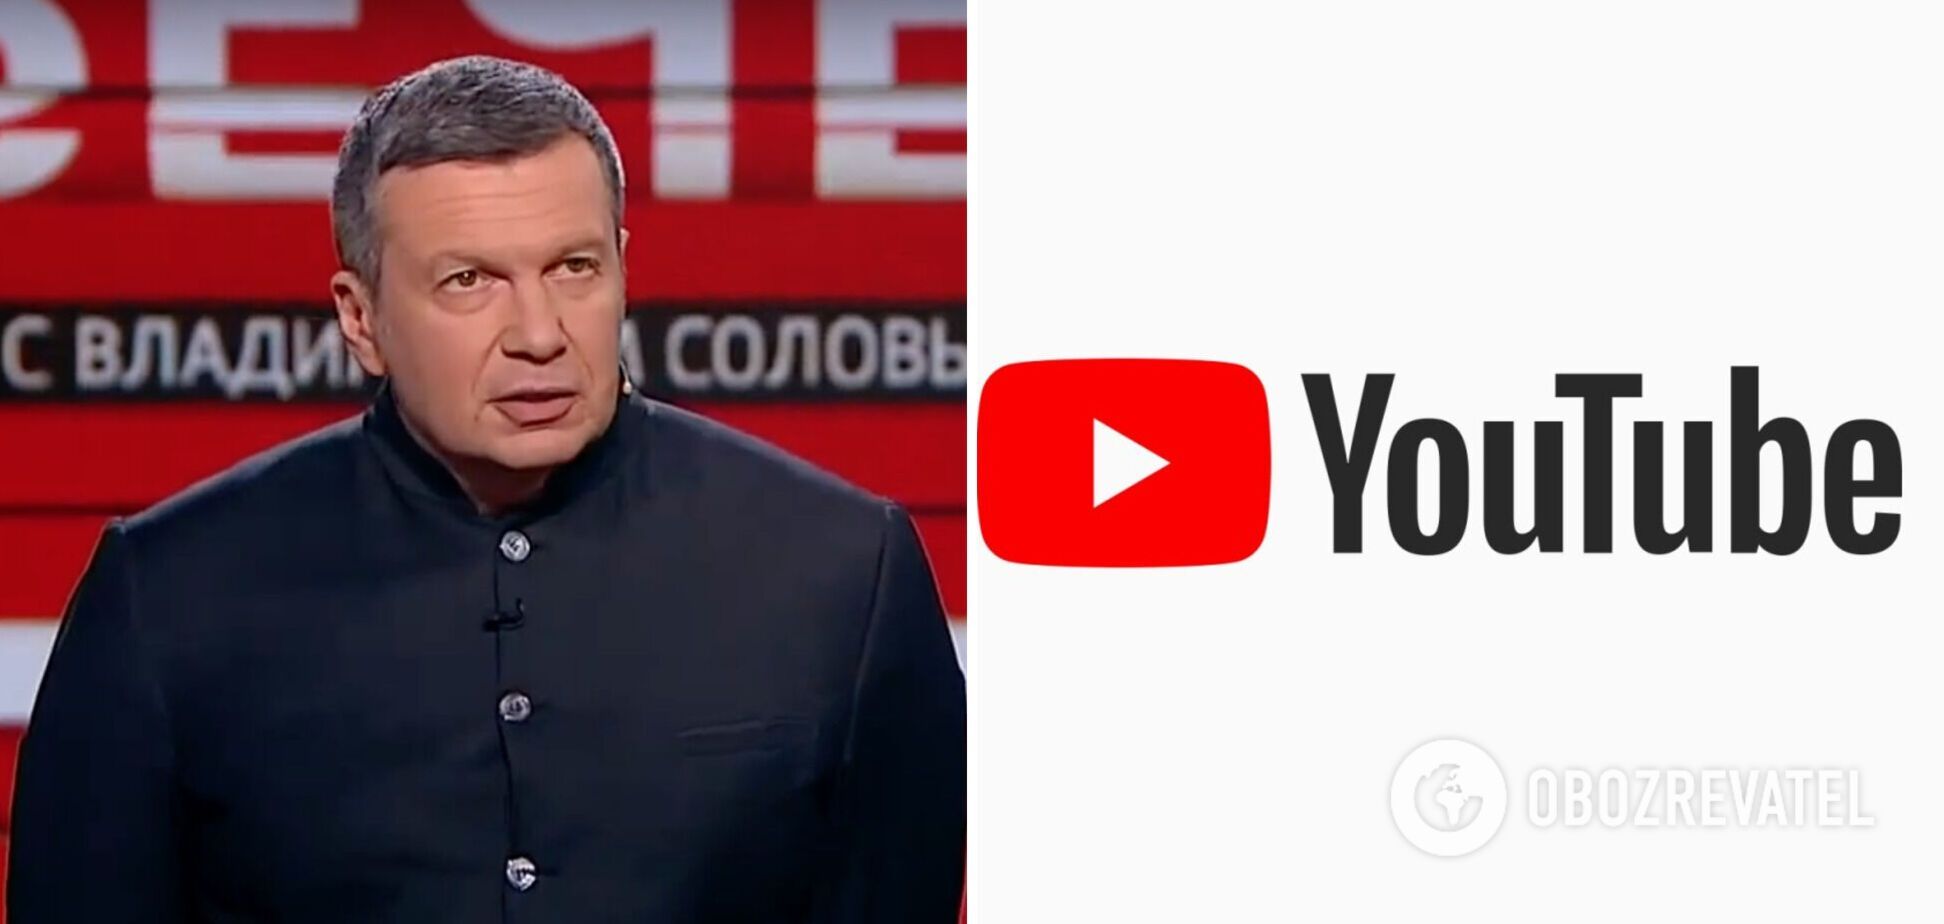 Соловьев создал новый канал на Youtube, который быстро заблокировали